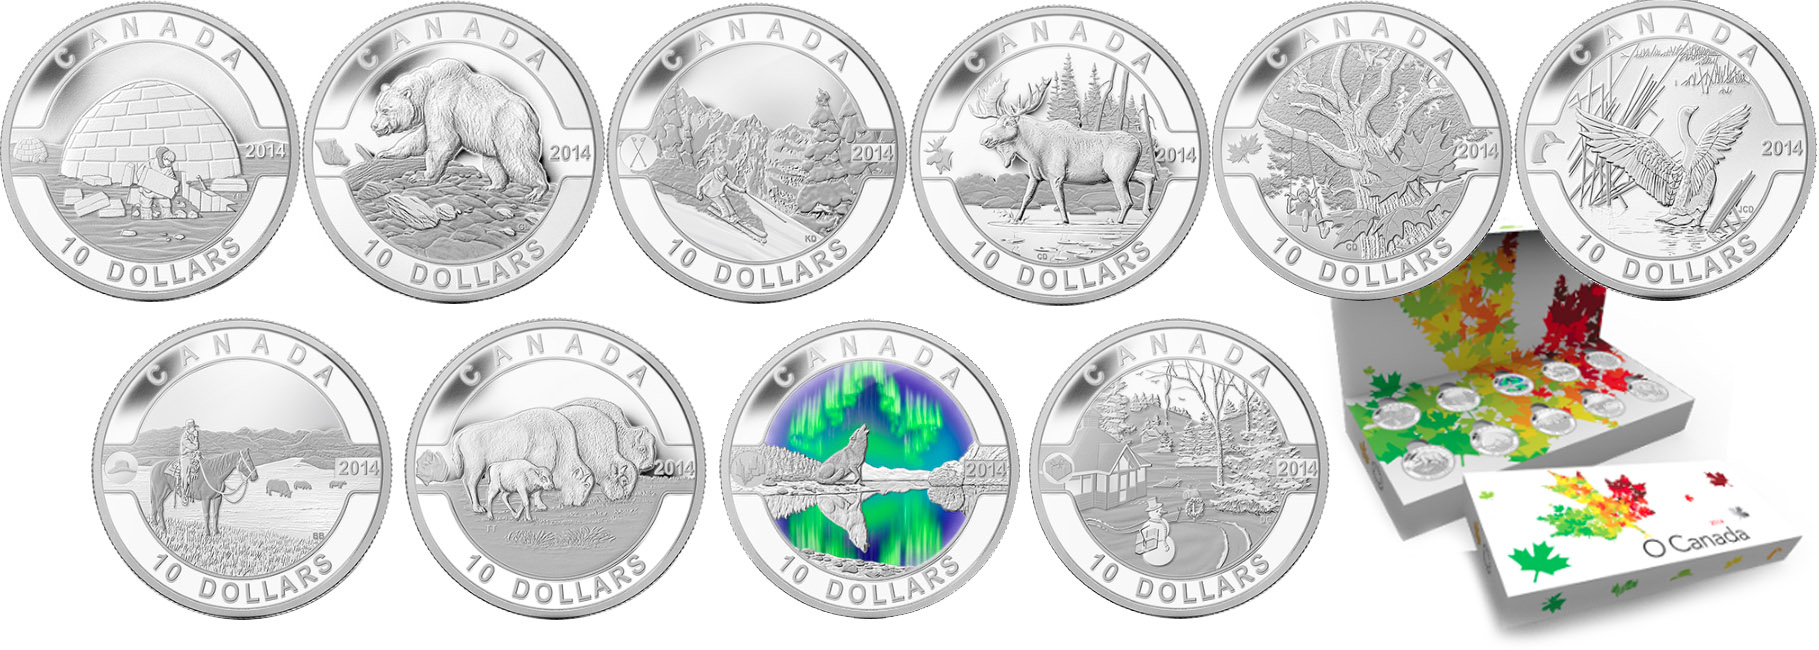 Новый выпуск монет серии «О Канада»